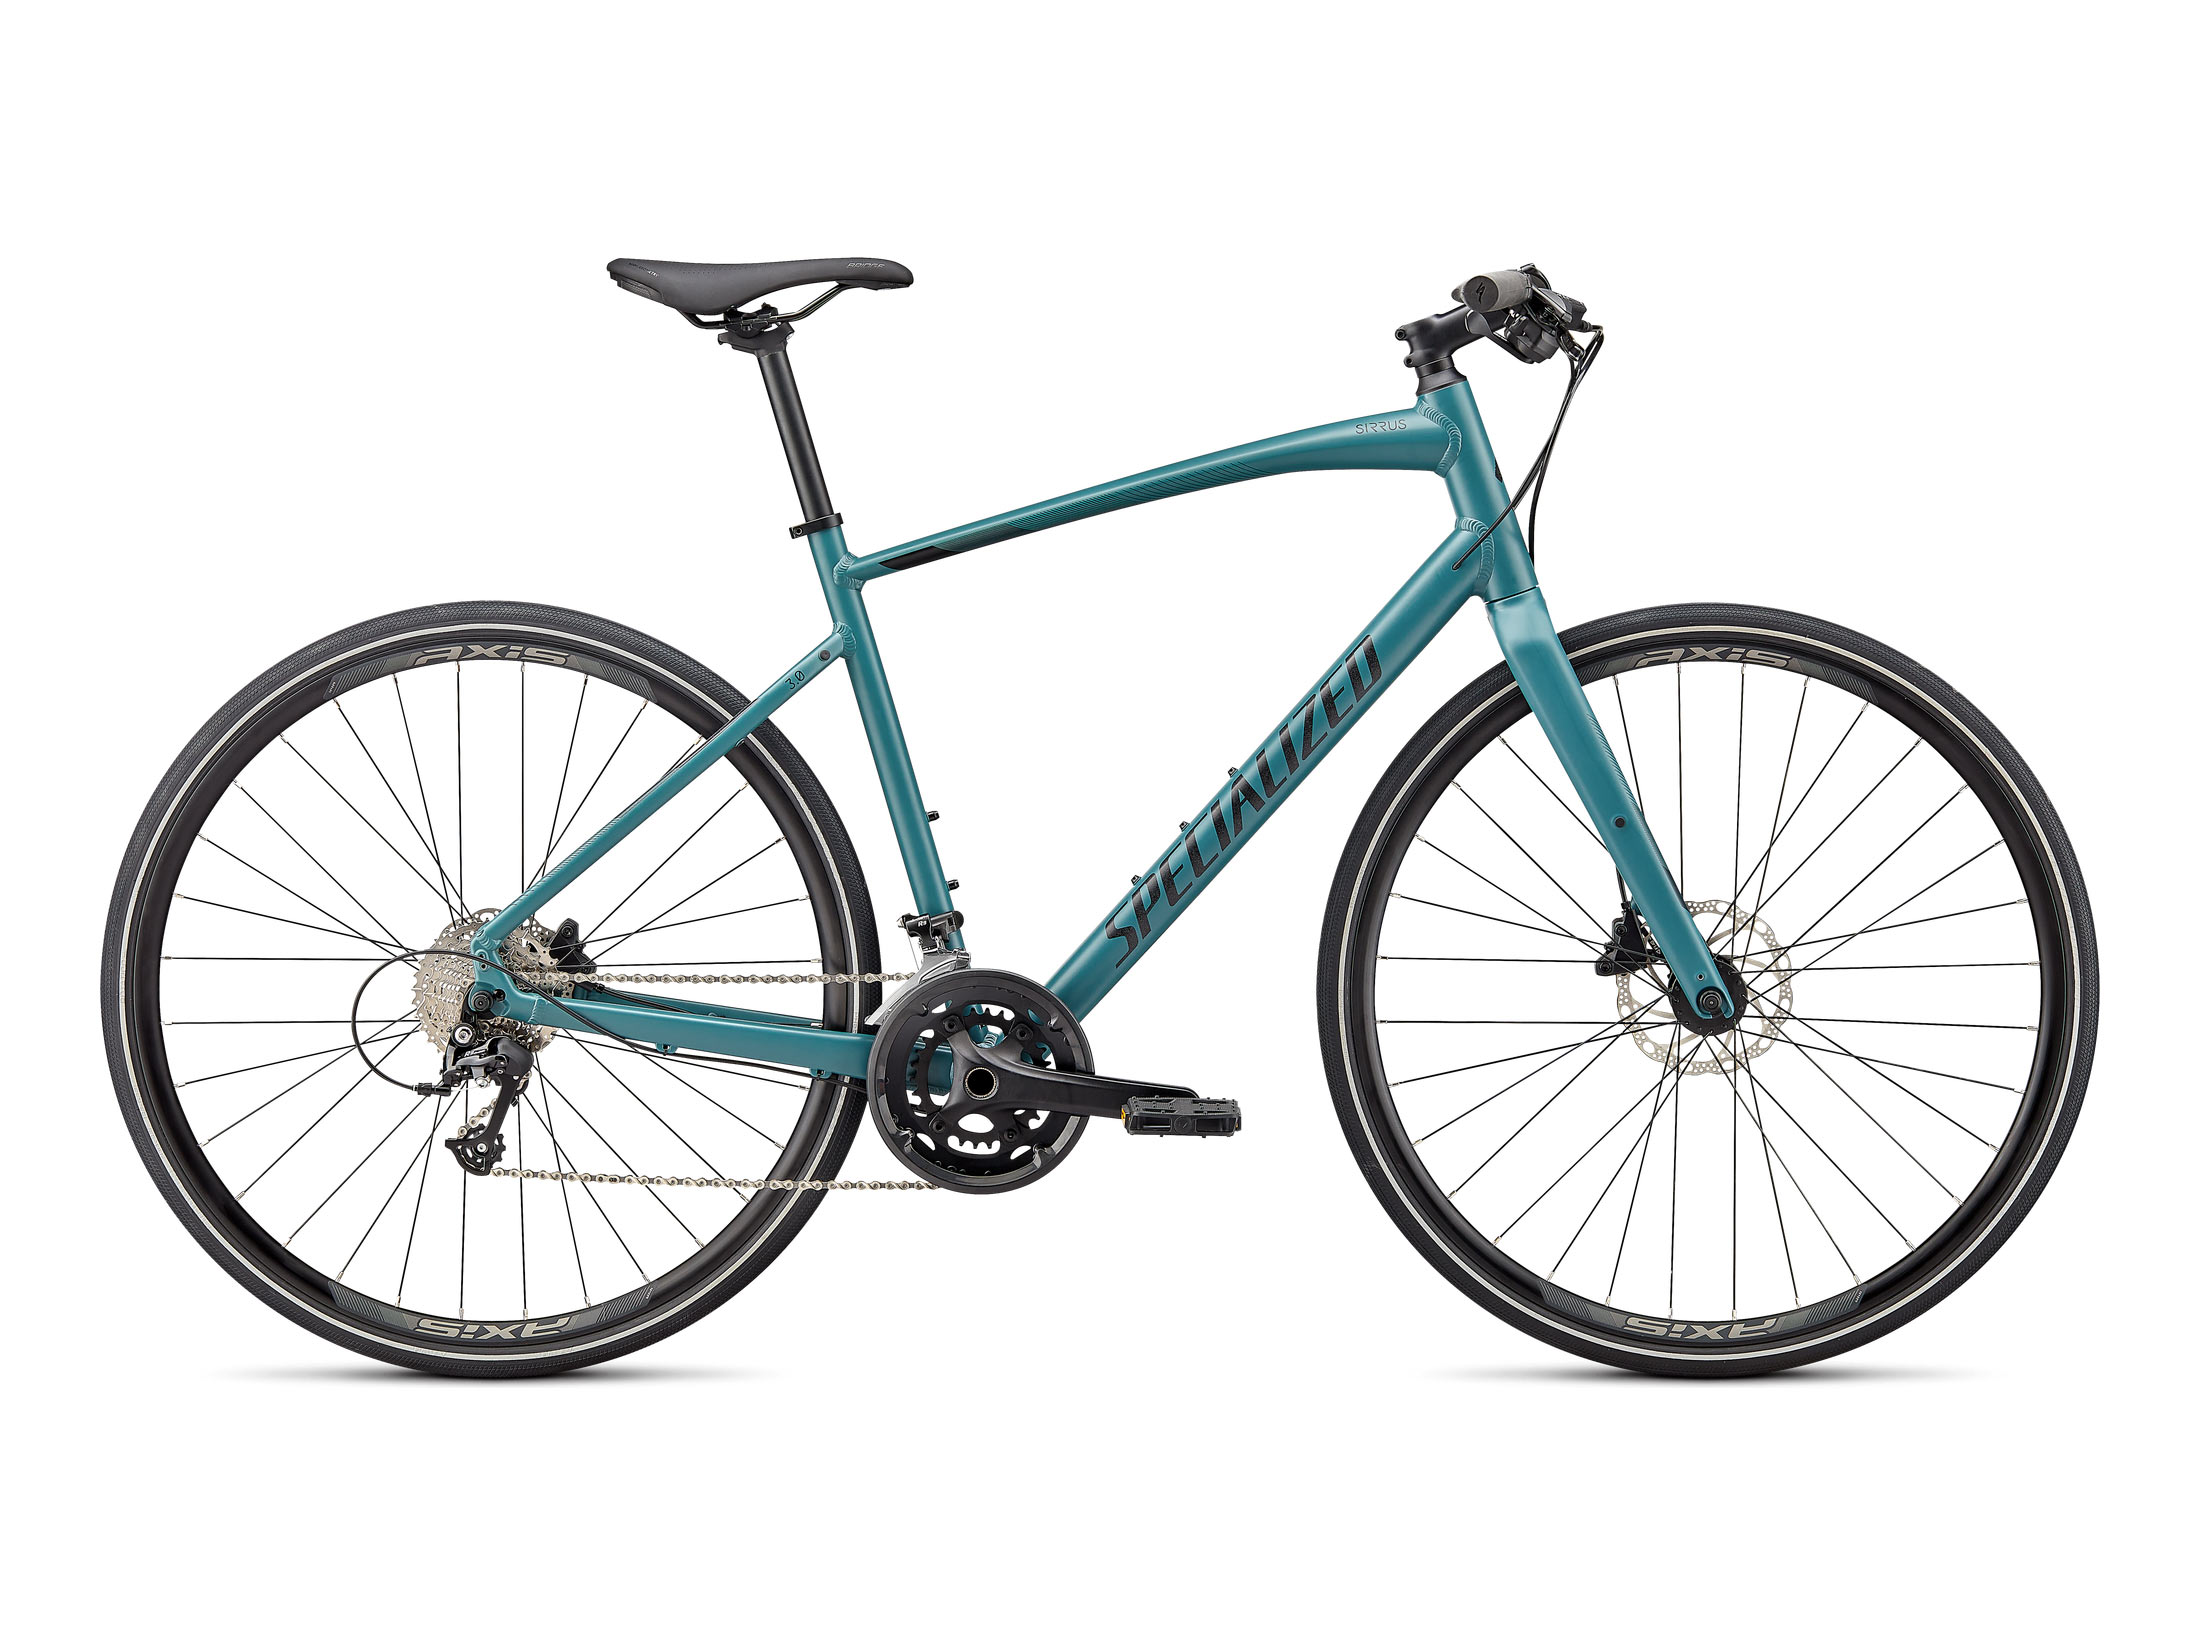 Ποδήλατο Specialized Sirrus 3.0  - Satin Dusty Turquoise / Black / Satin Black Reflective